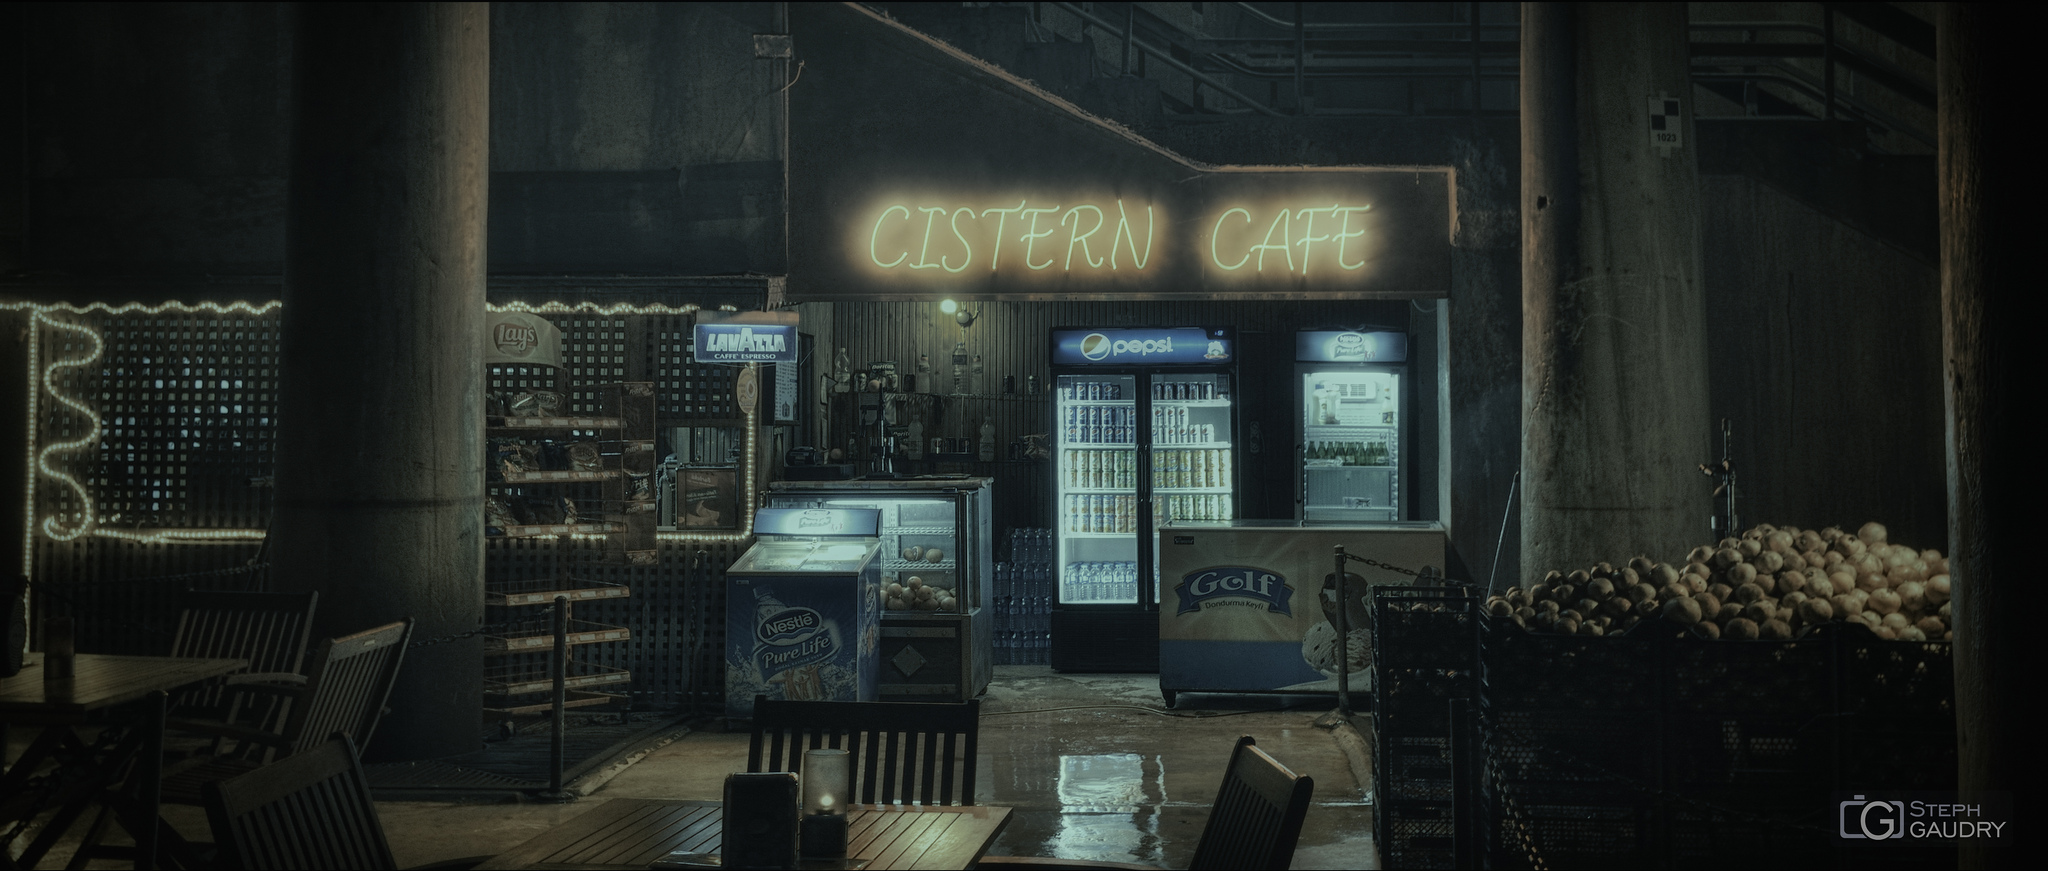 Istanbul - Cistern Cafe [Klik om de diavoorstelling te starten]